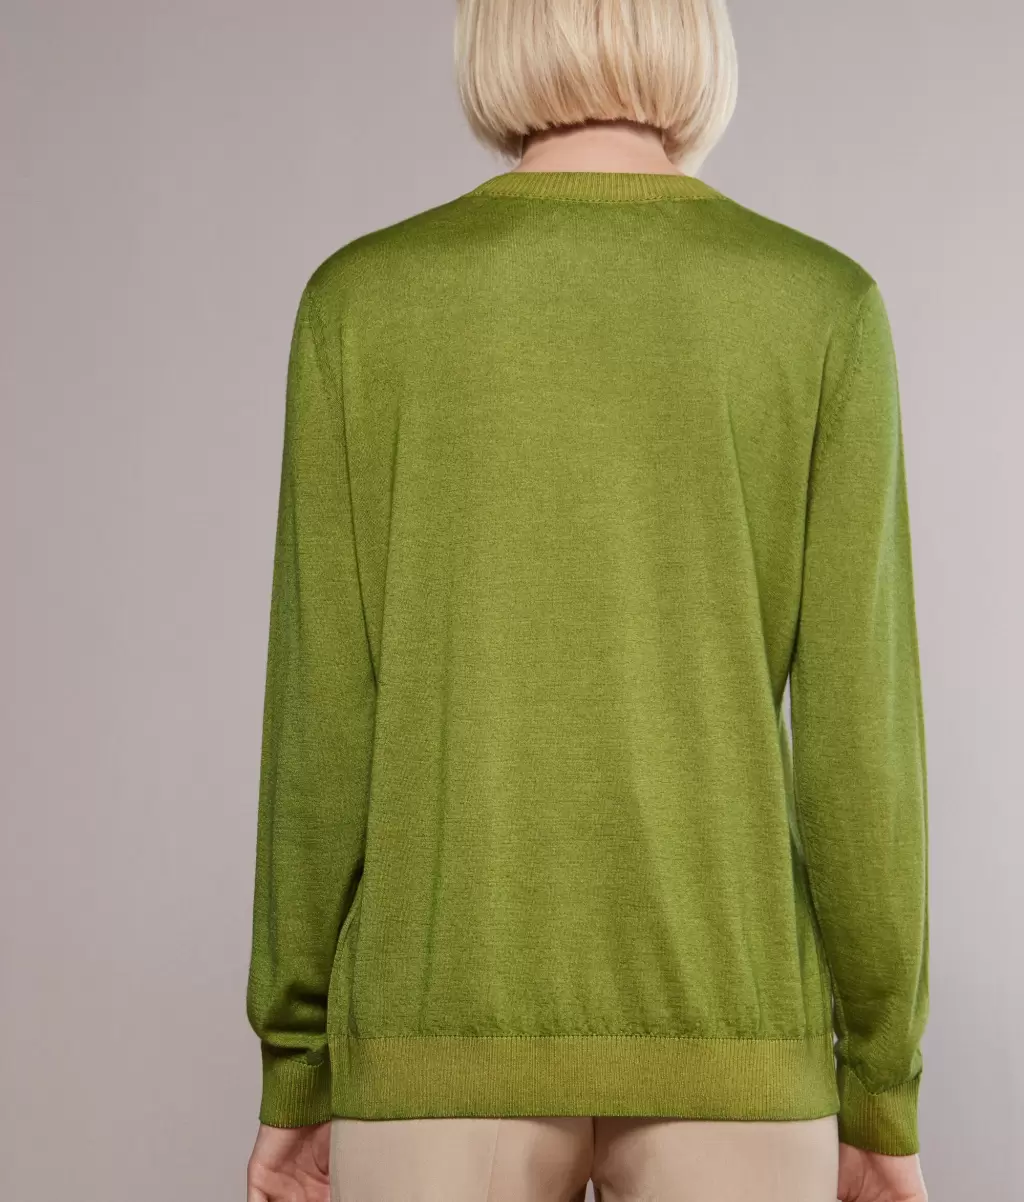 Swetry Z Okrągłym Dekoltem Kobieta Pulower Z Kaszmiru Ultrafine Green Falconeri - 2